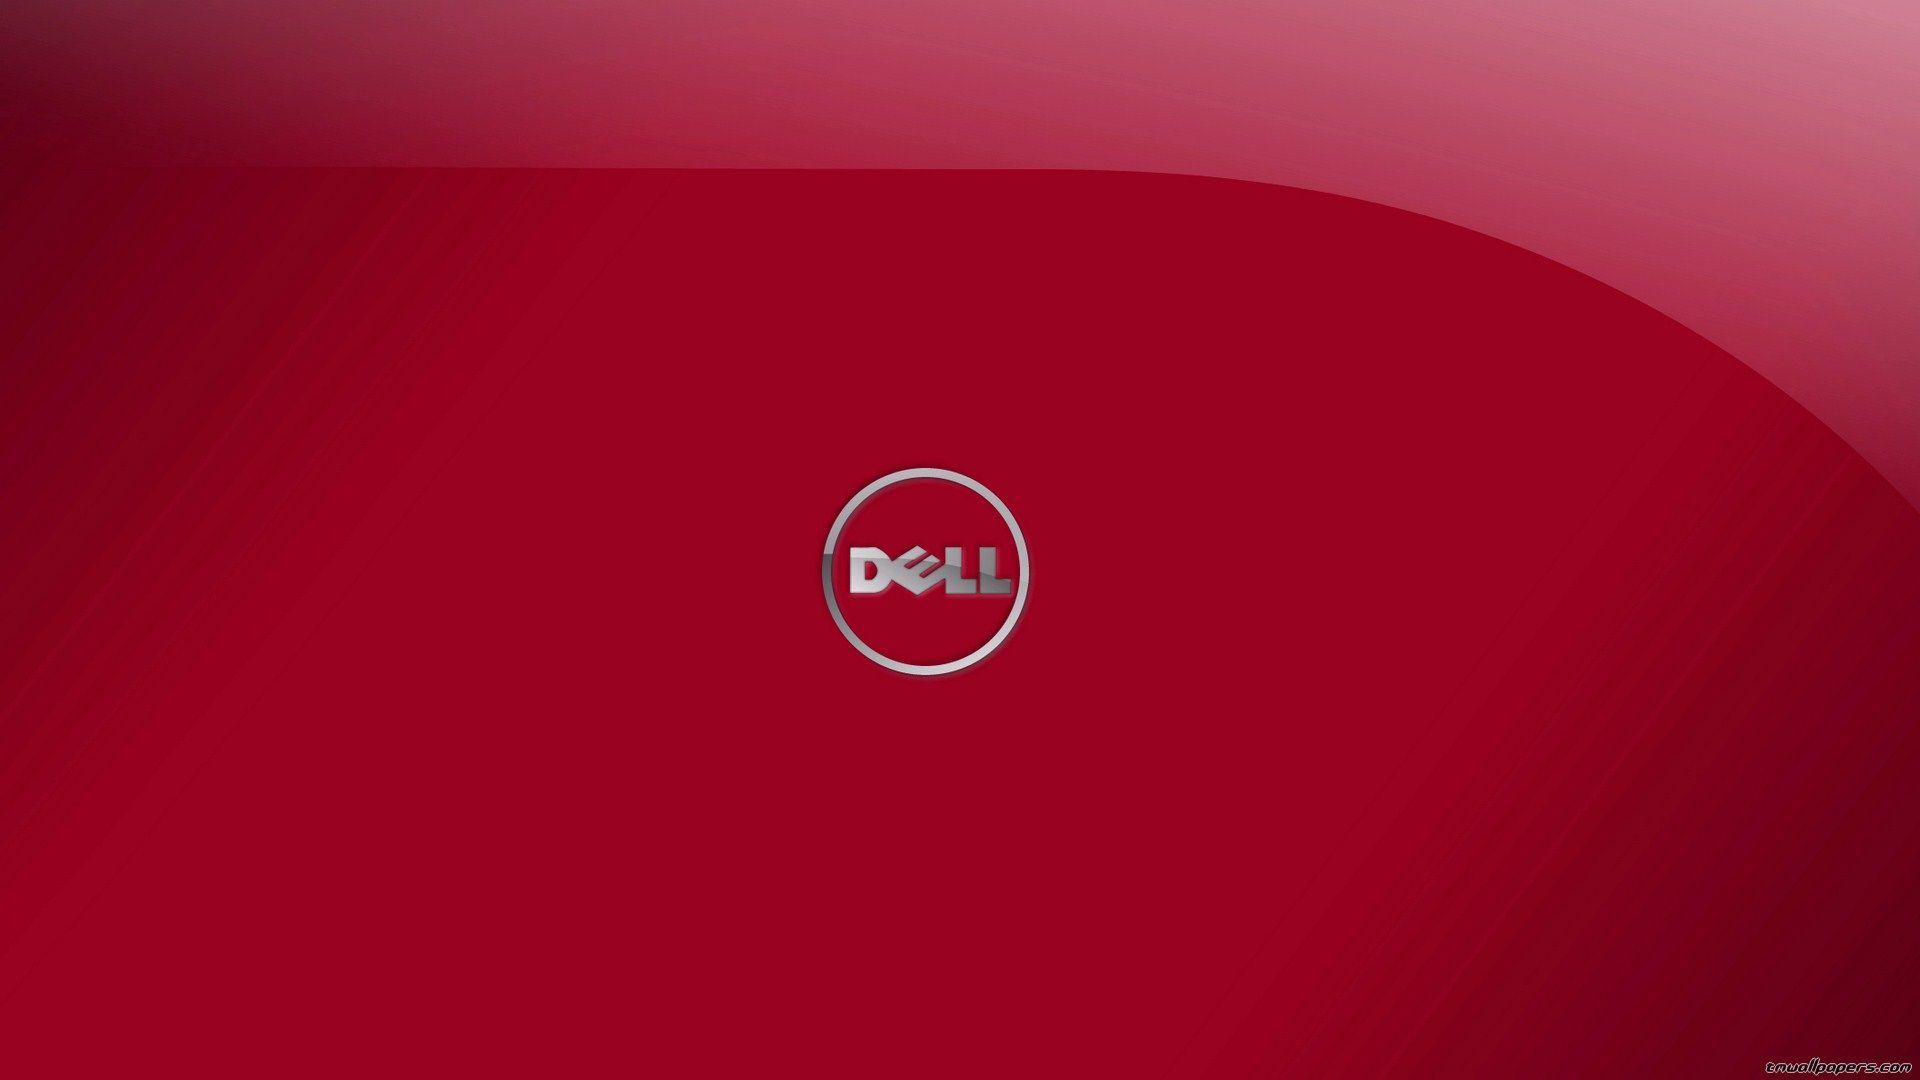 Dell Wallpapers 
 Data-src /full/937421 - Dell Wallpaper Hd - HD Wallpaper 